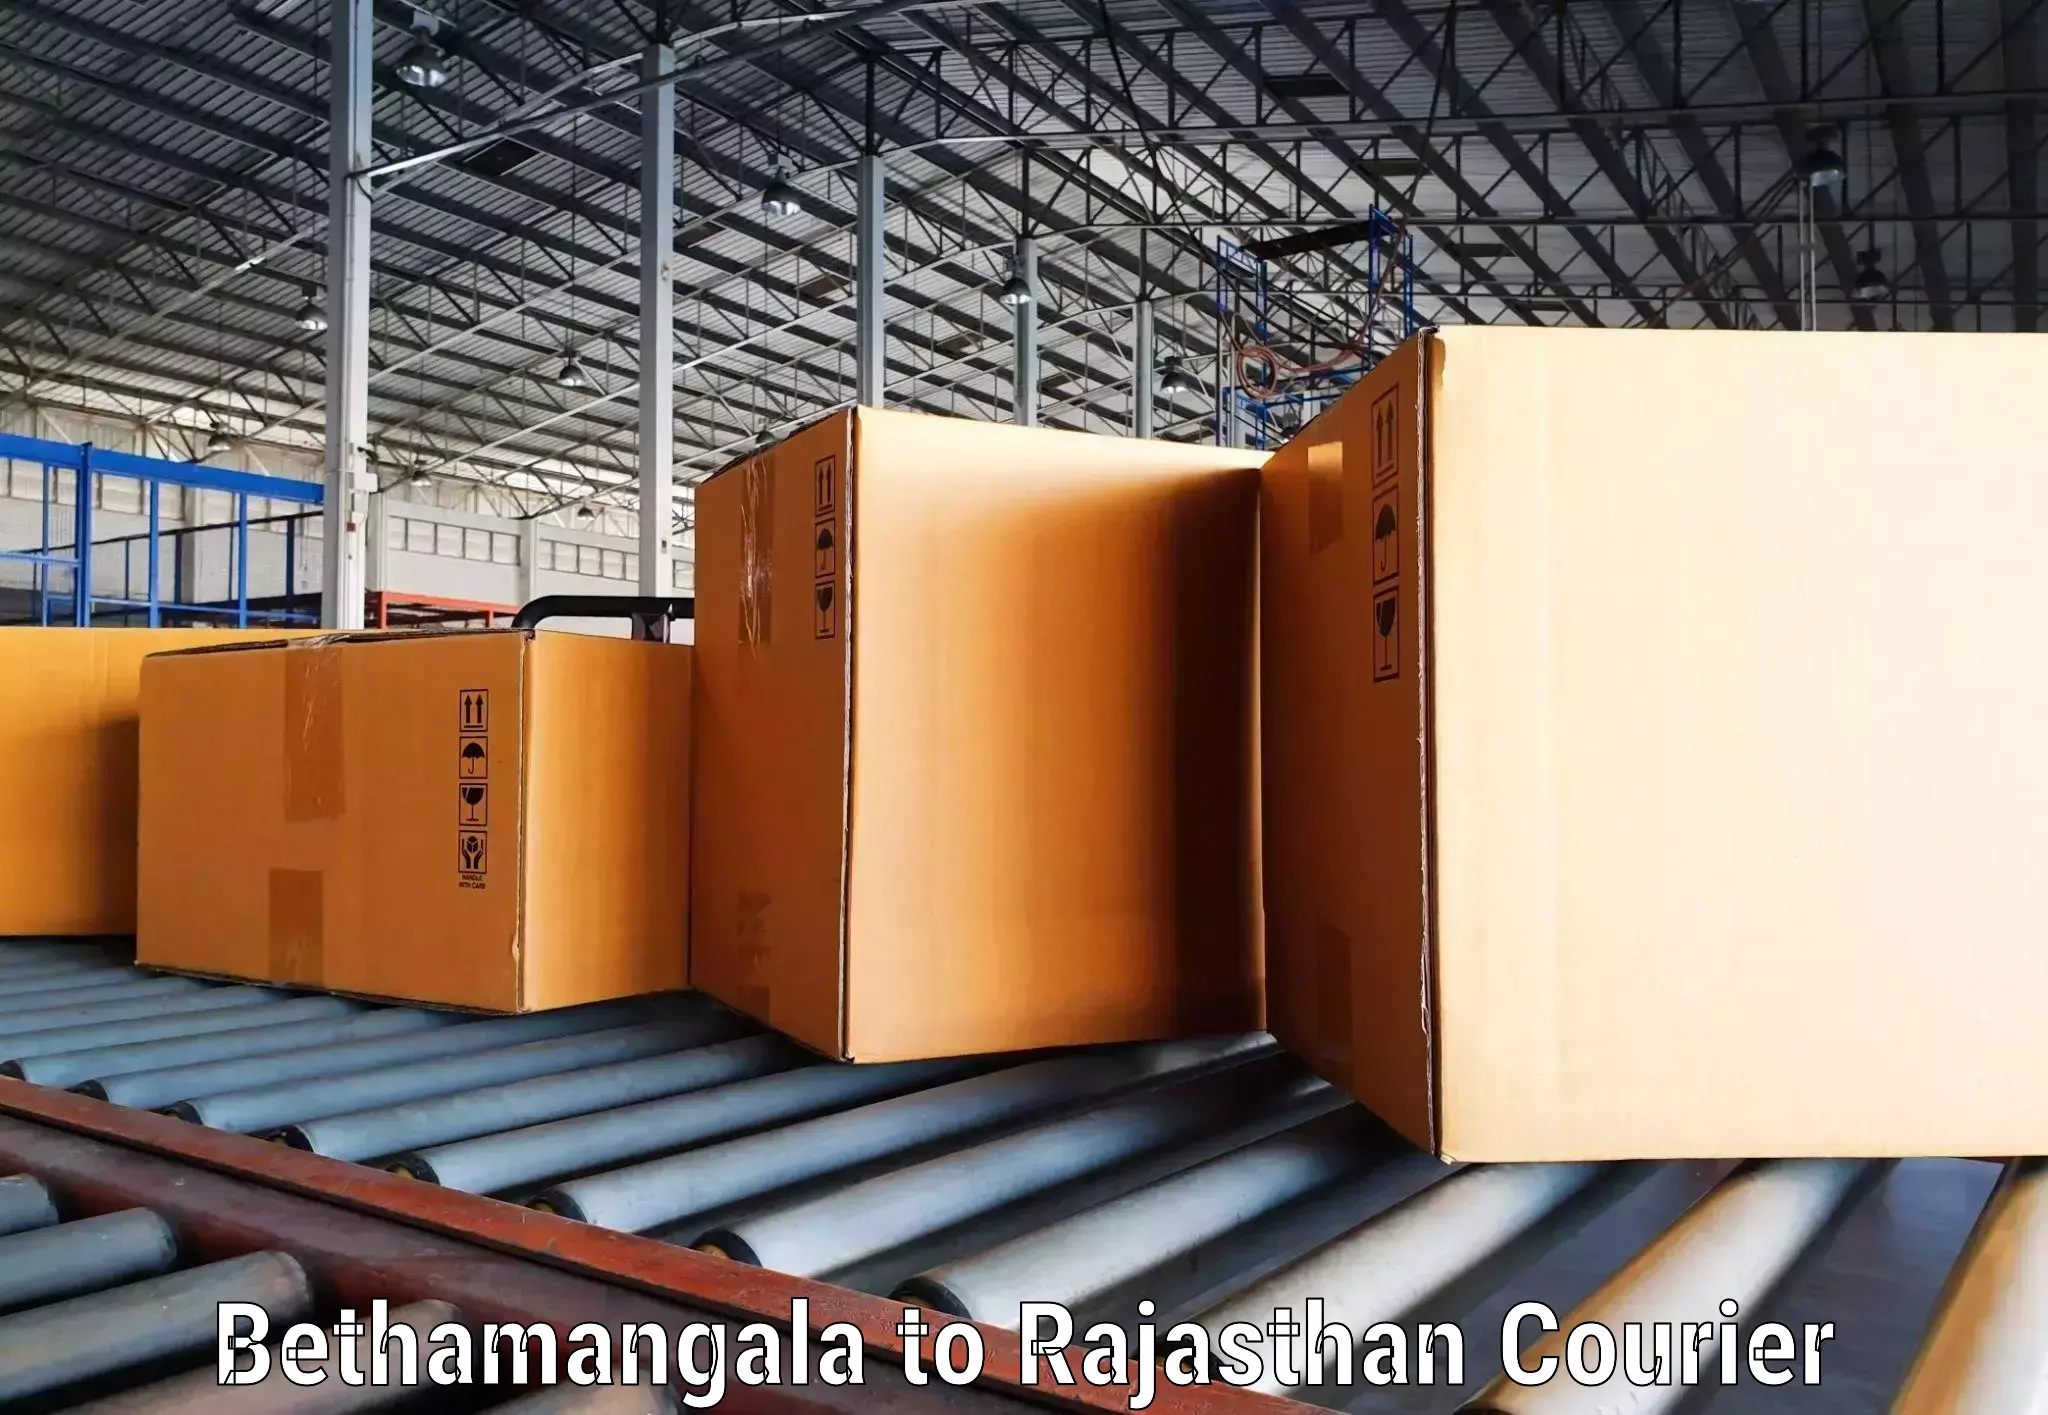 Digital courier platforms Bethamangala to Rajgarh Rajasthan